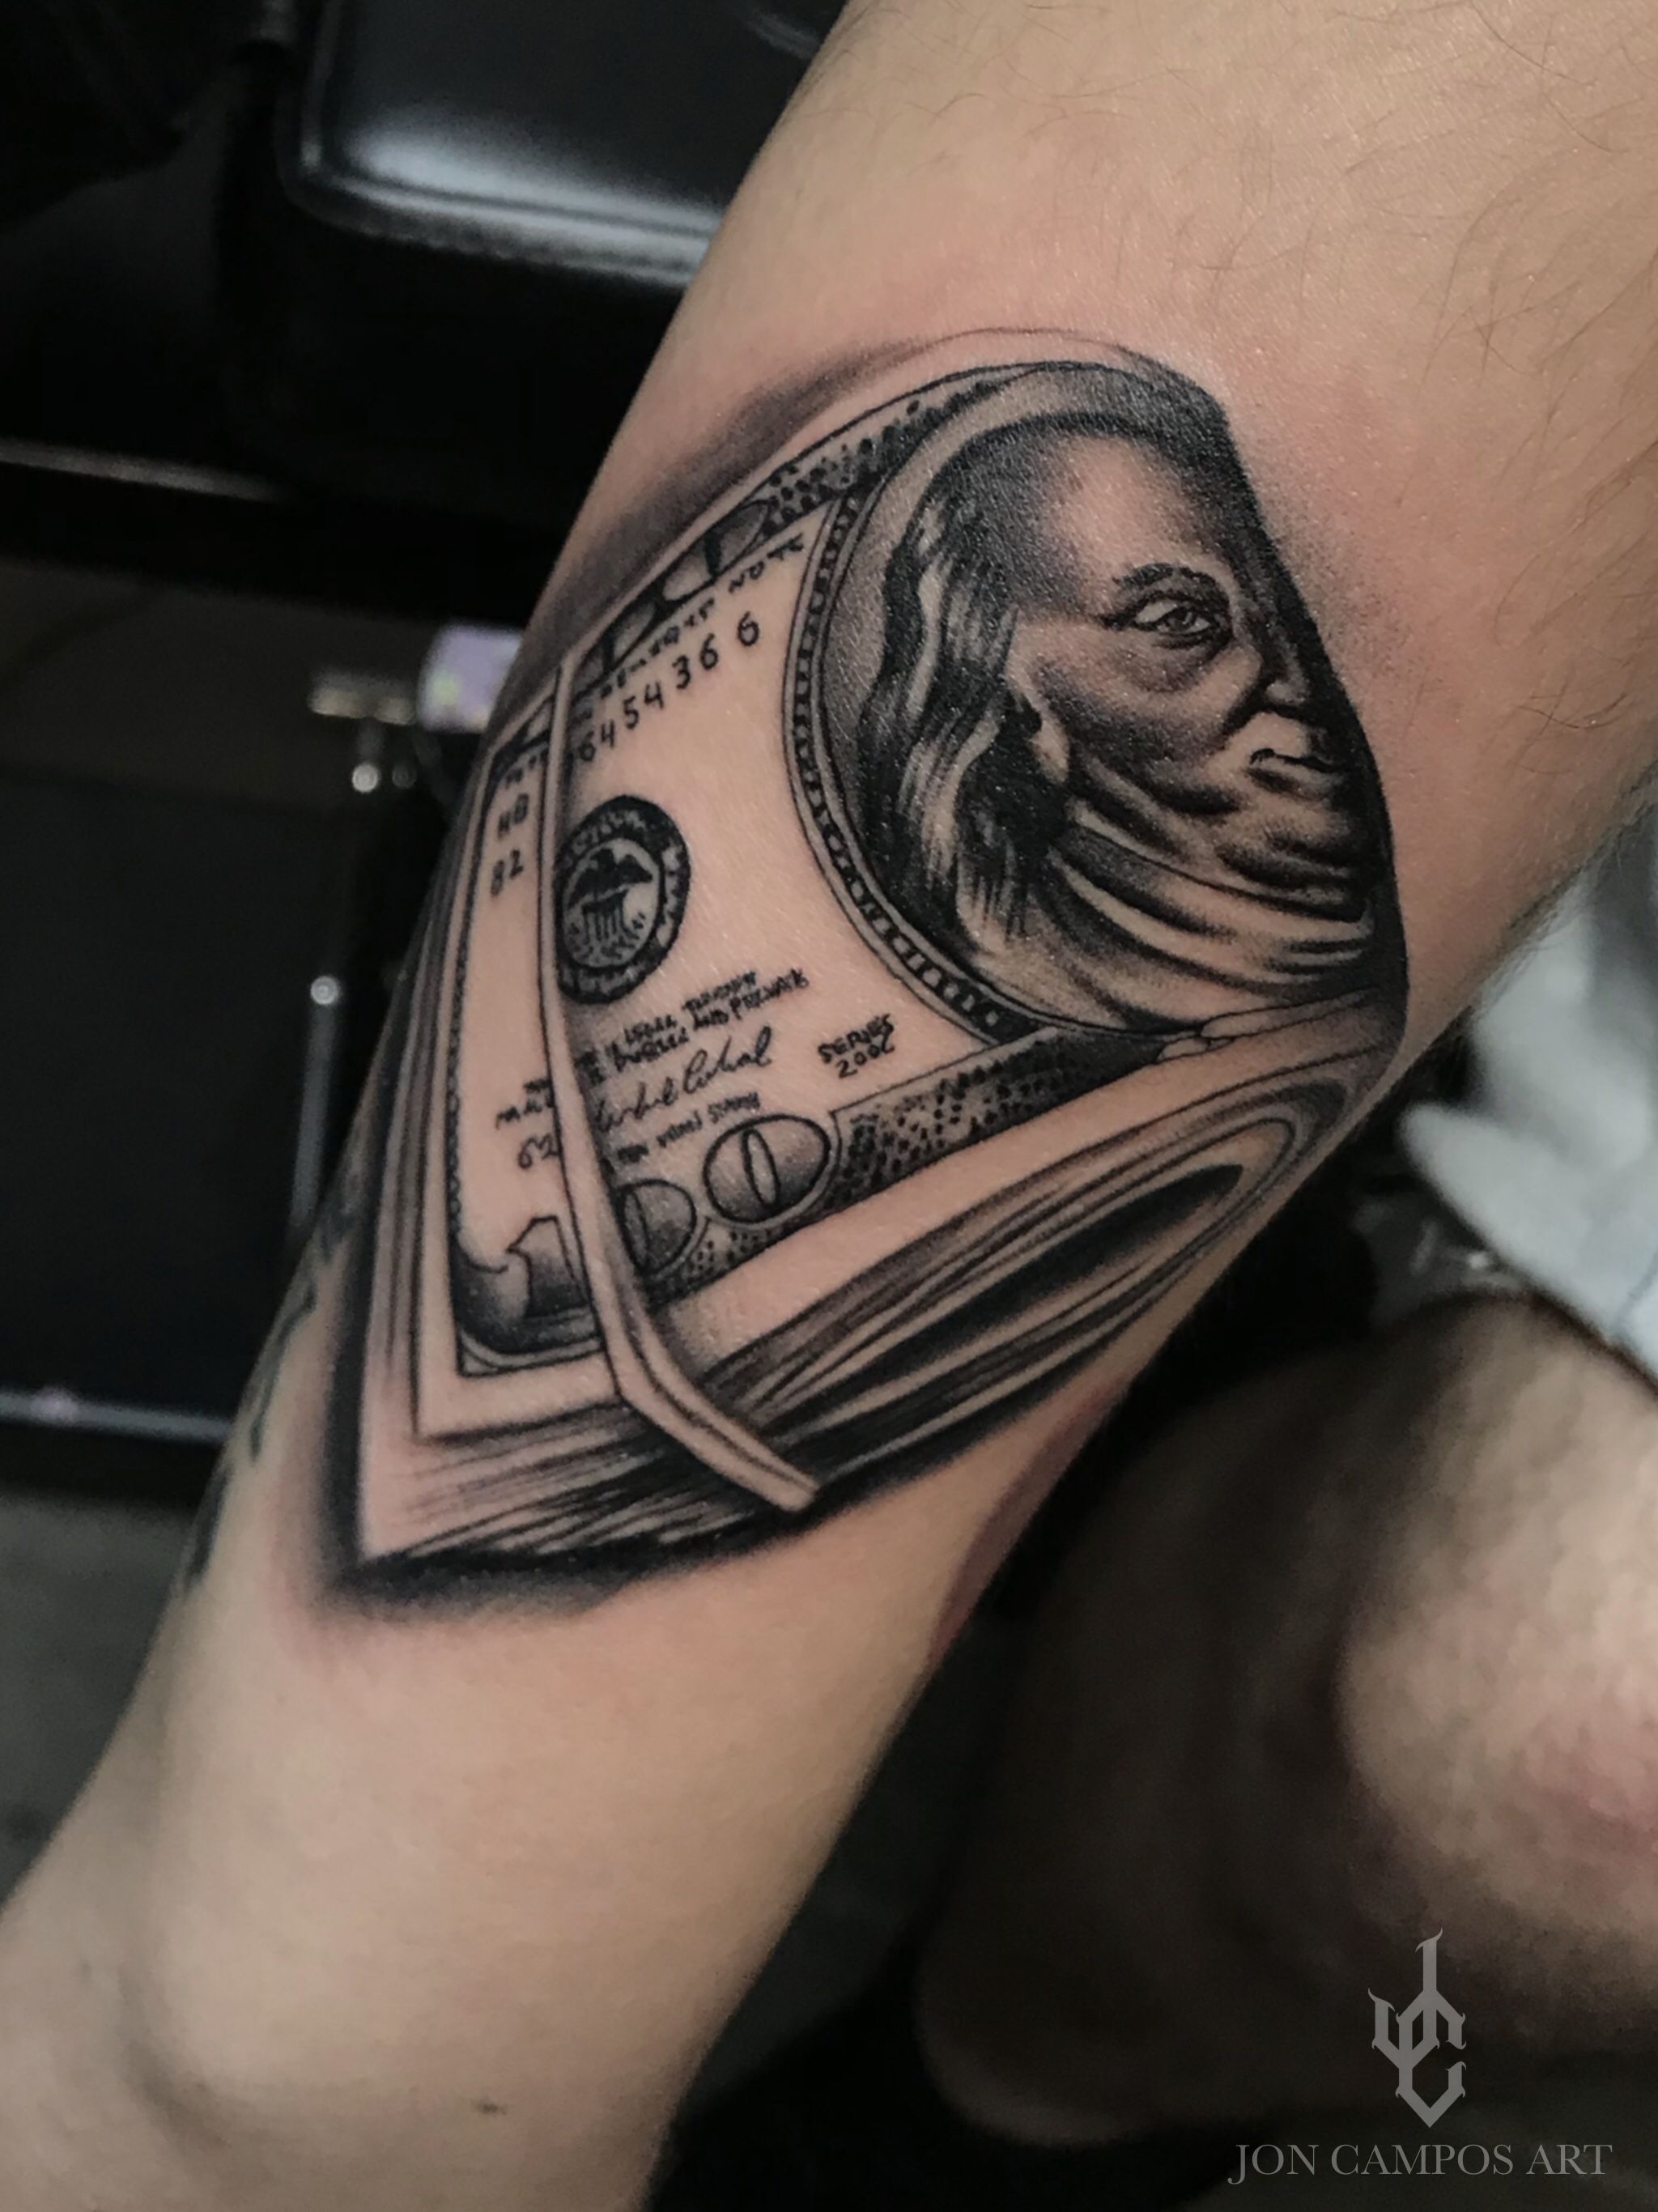 Fan Gets Massive Blueface and Benjamin Franklin Tattoo  XXL